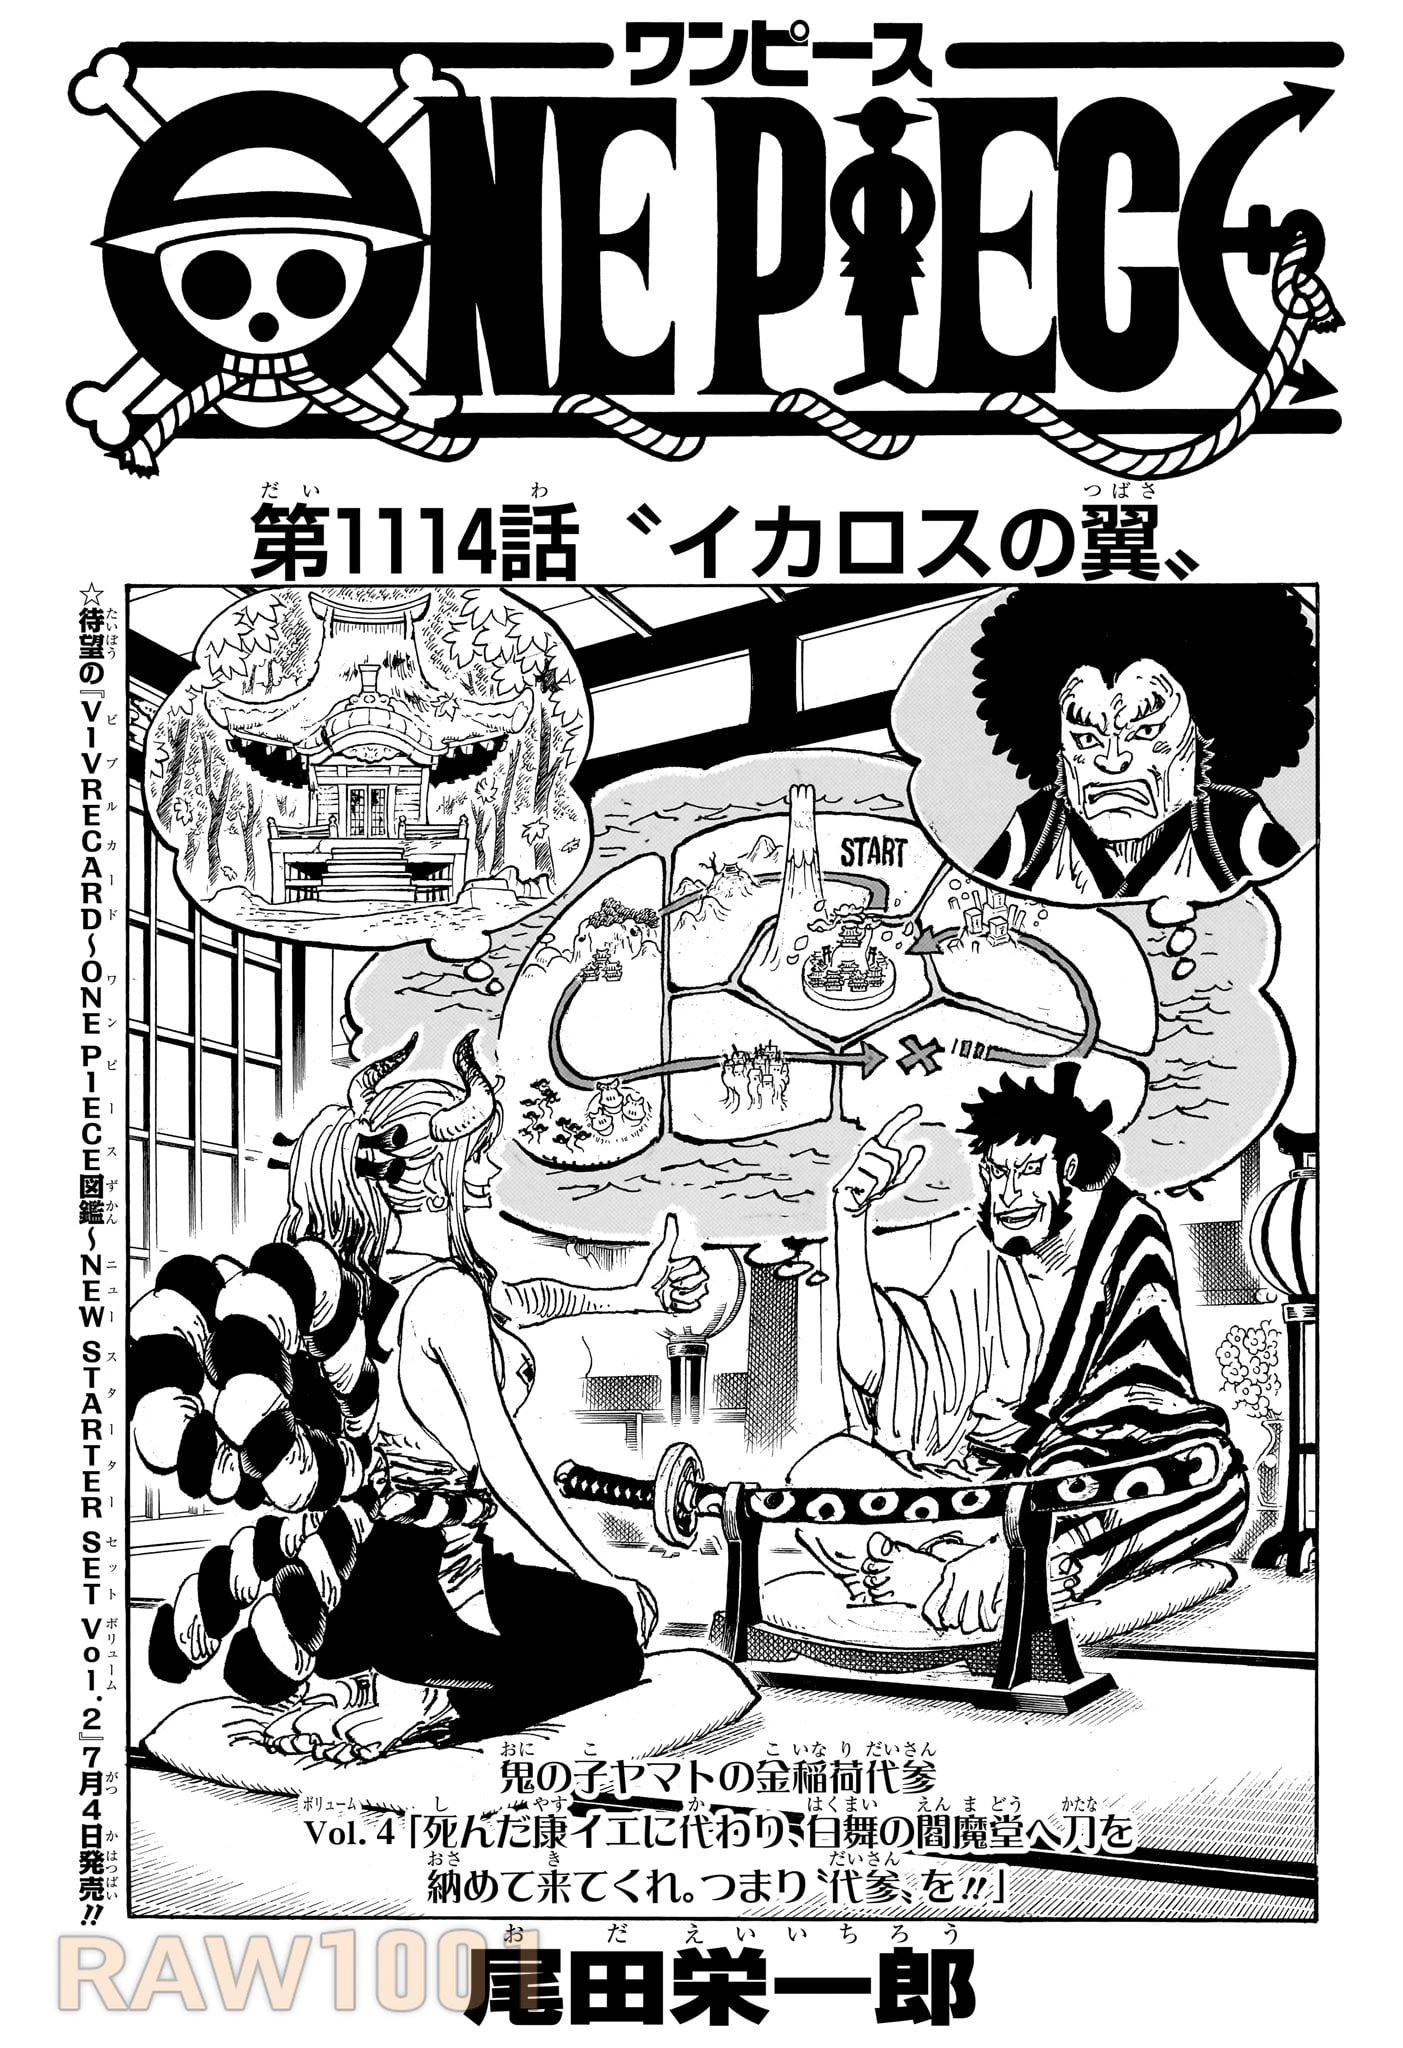 ワンピース 第1114話 Raw - Mangakoma - 漫画koma - 漫画raw